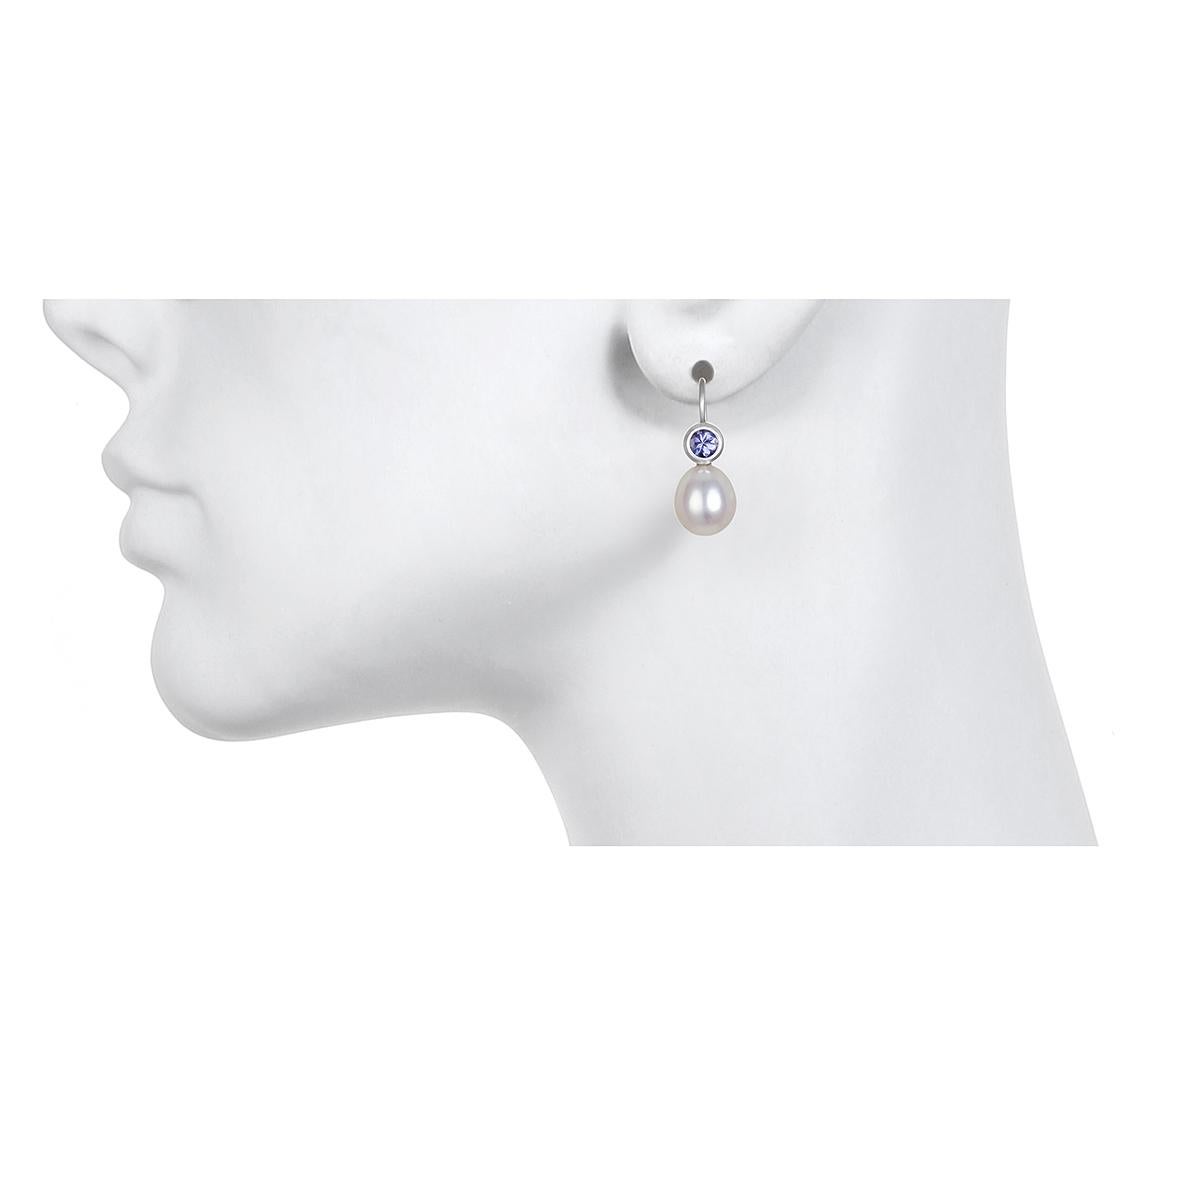 Serti en or blanc 18k,  la gamme brillante de teintes violettes et bleues de la tanzanite est mise en valeur par des perles d'eau douce blanches et brillantes pour créer une paire de boucles d'oreilles classiques modernes.  Finition